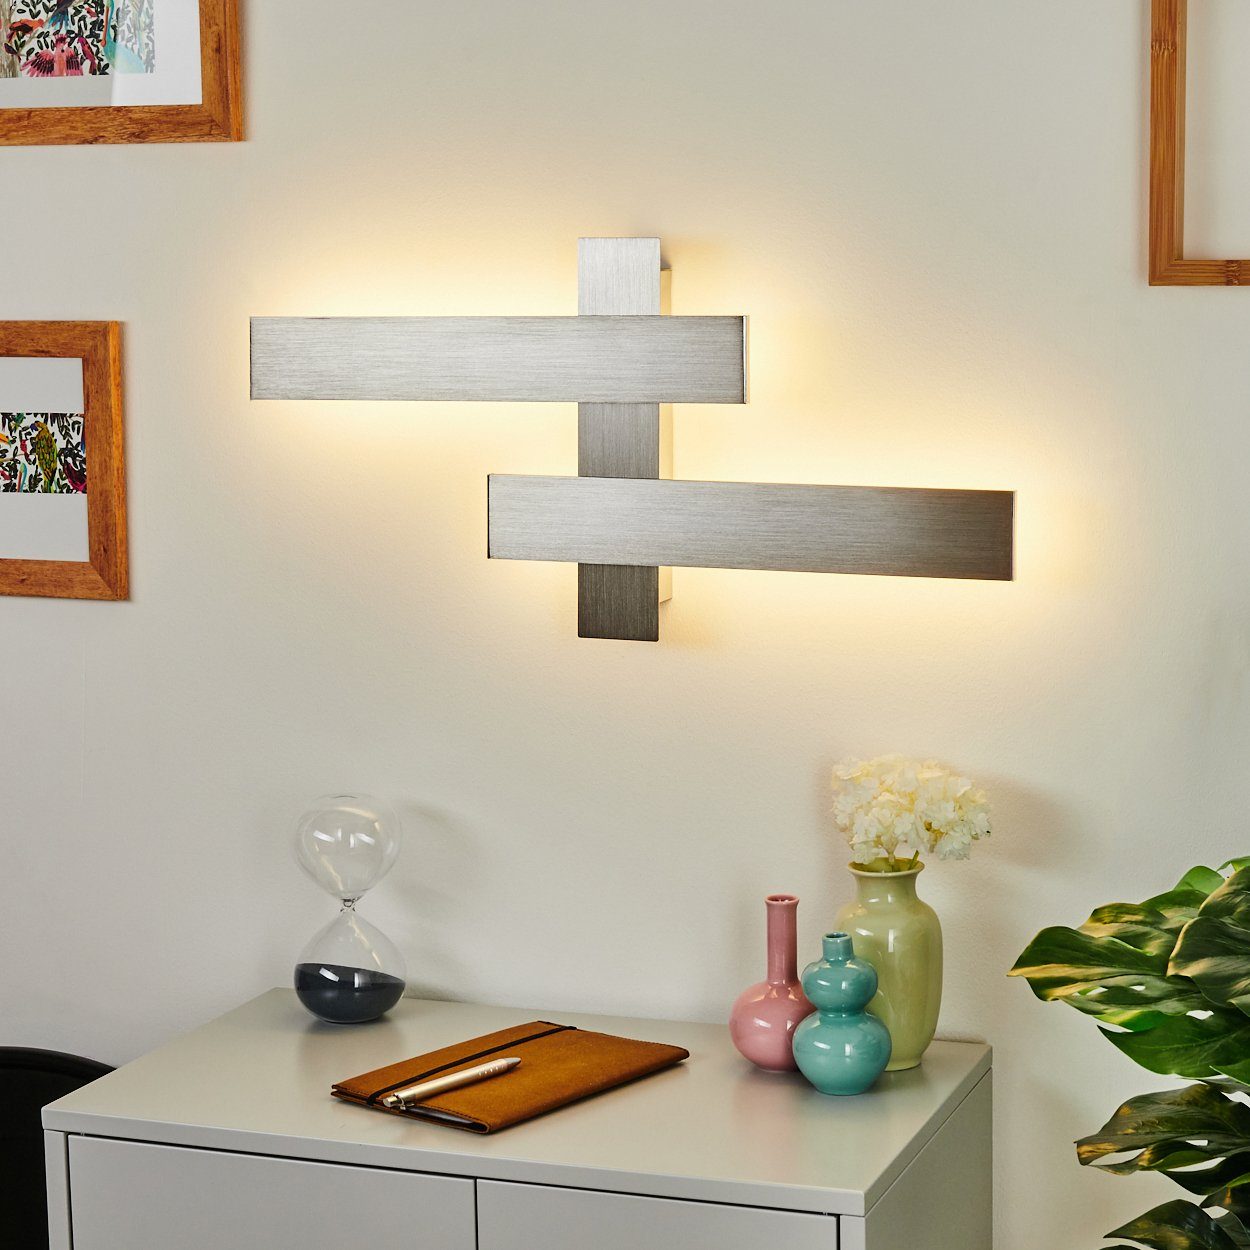 Zimmer hofstein Flur Wandleuchte Lampen dimmbar Strahler Wohn Moderne Lichteffekt Wand LED